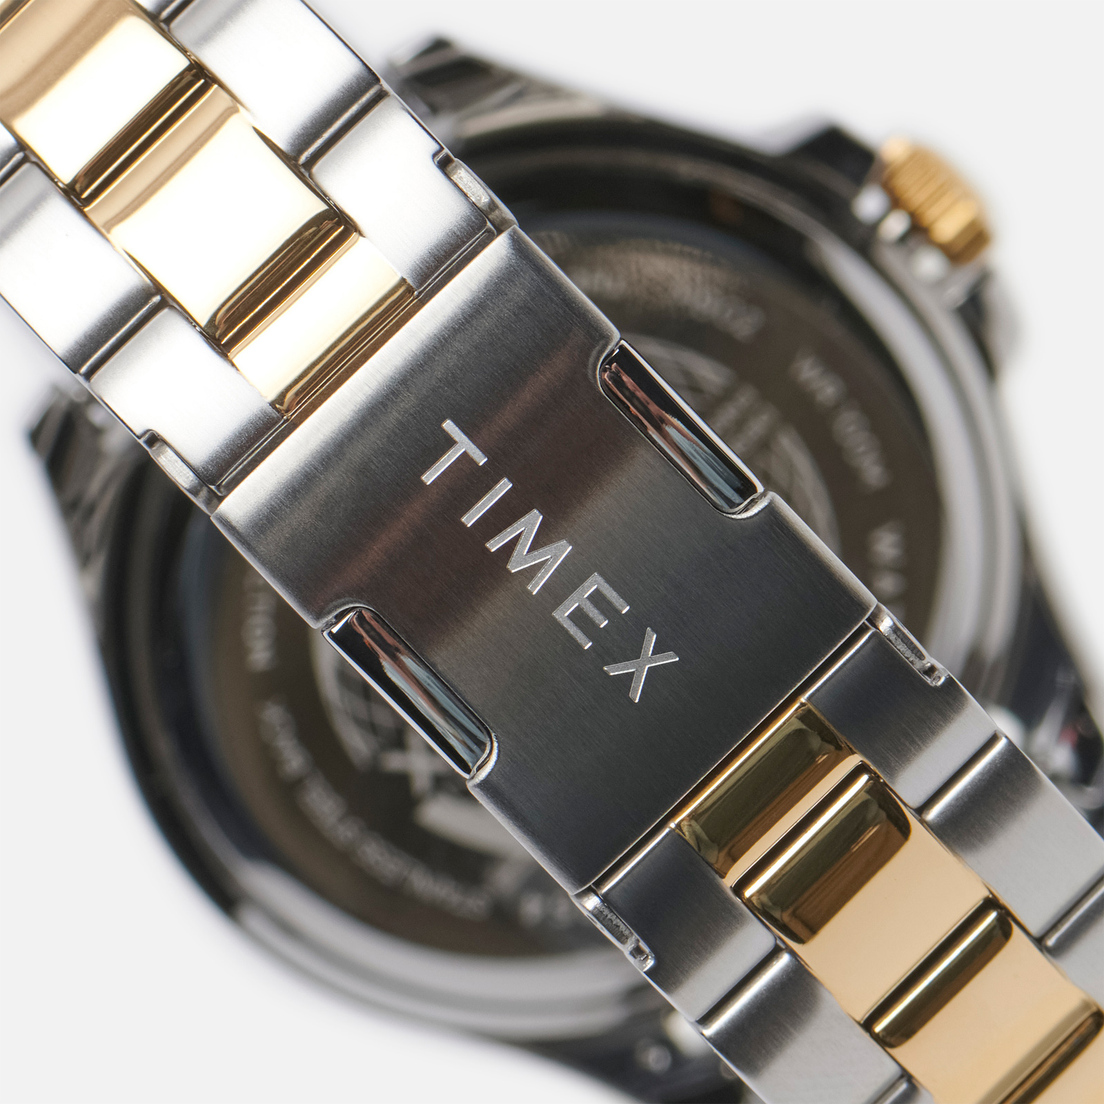 Timex Наручные часы Harborside